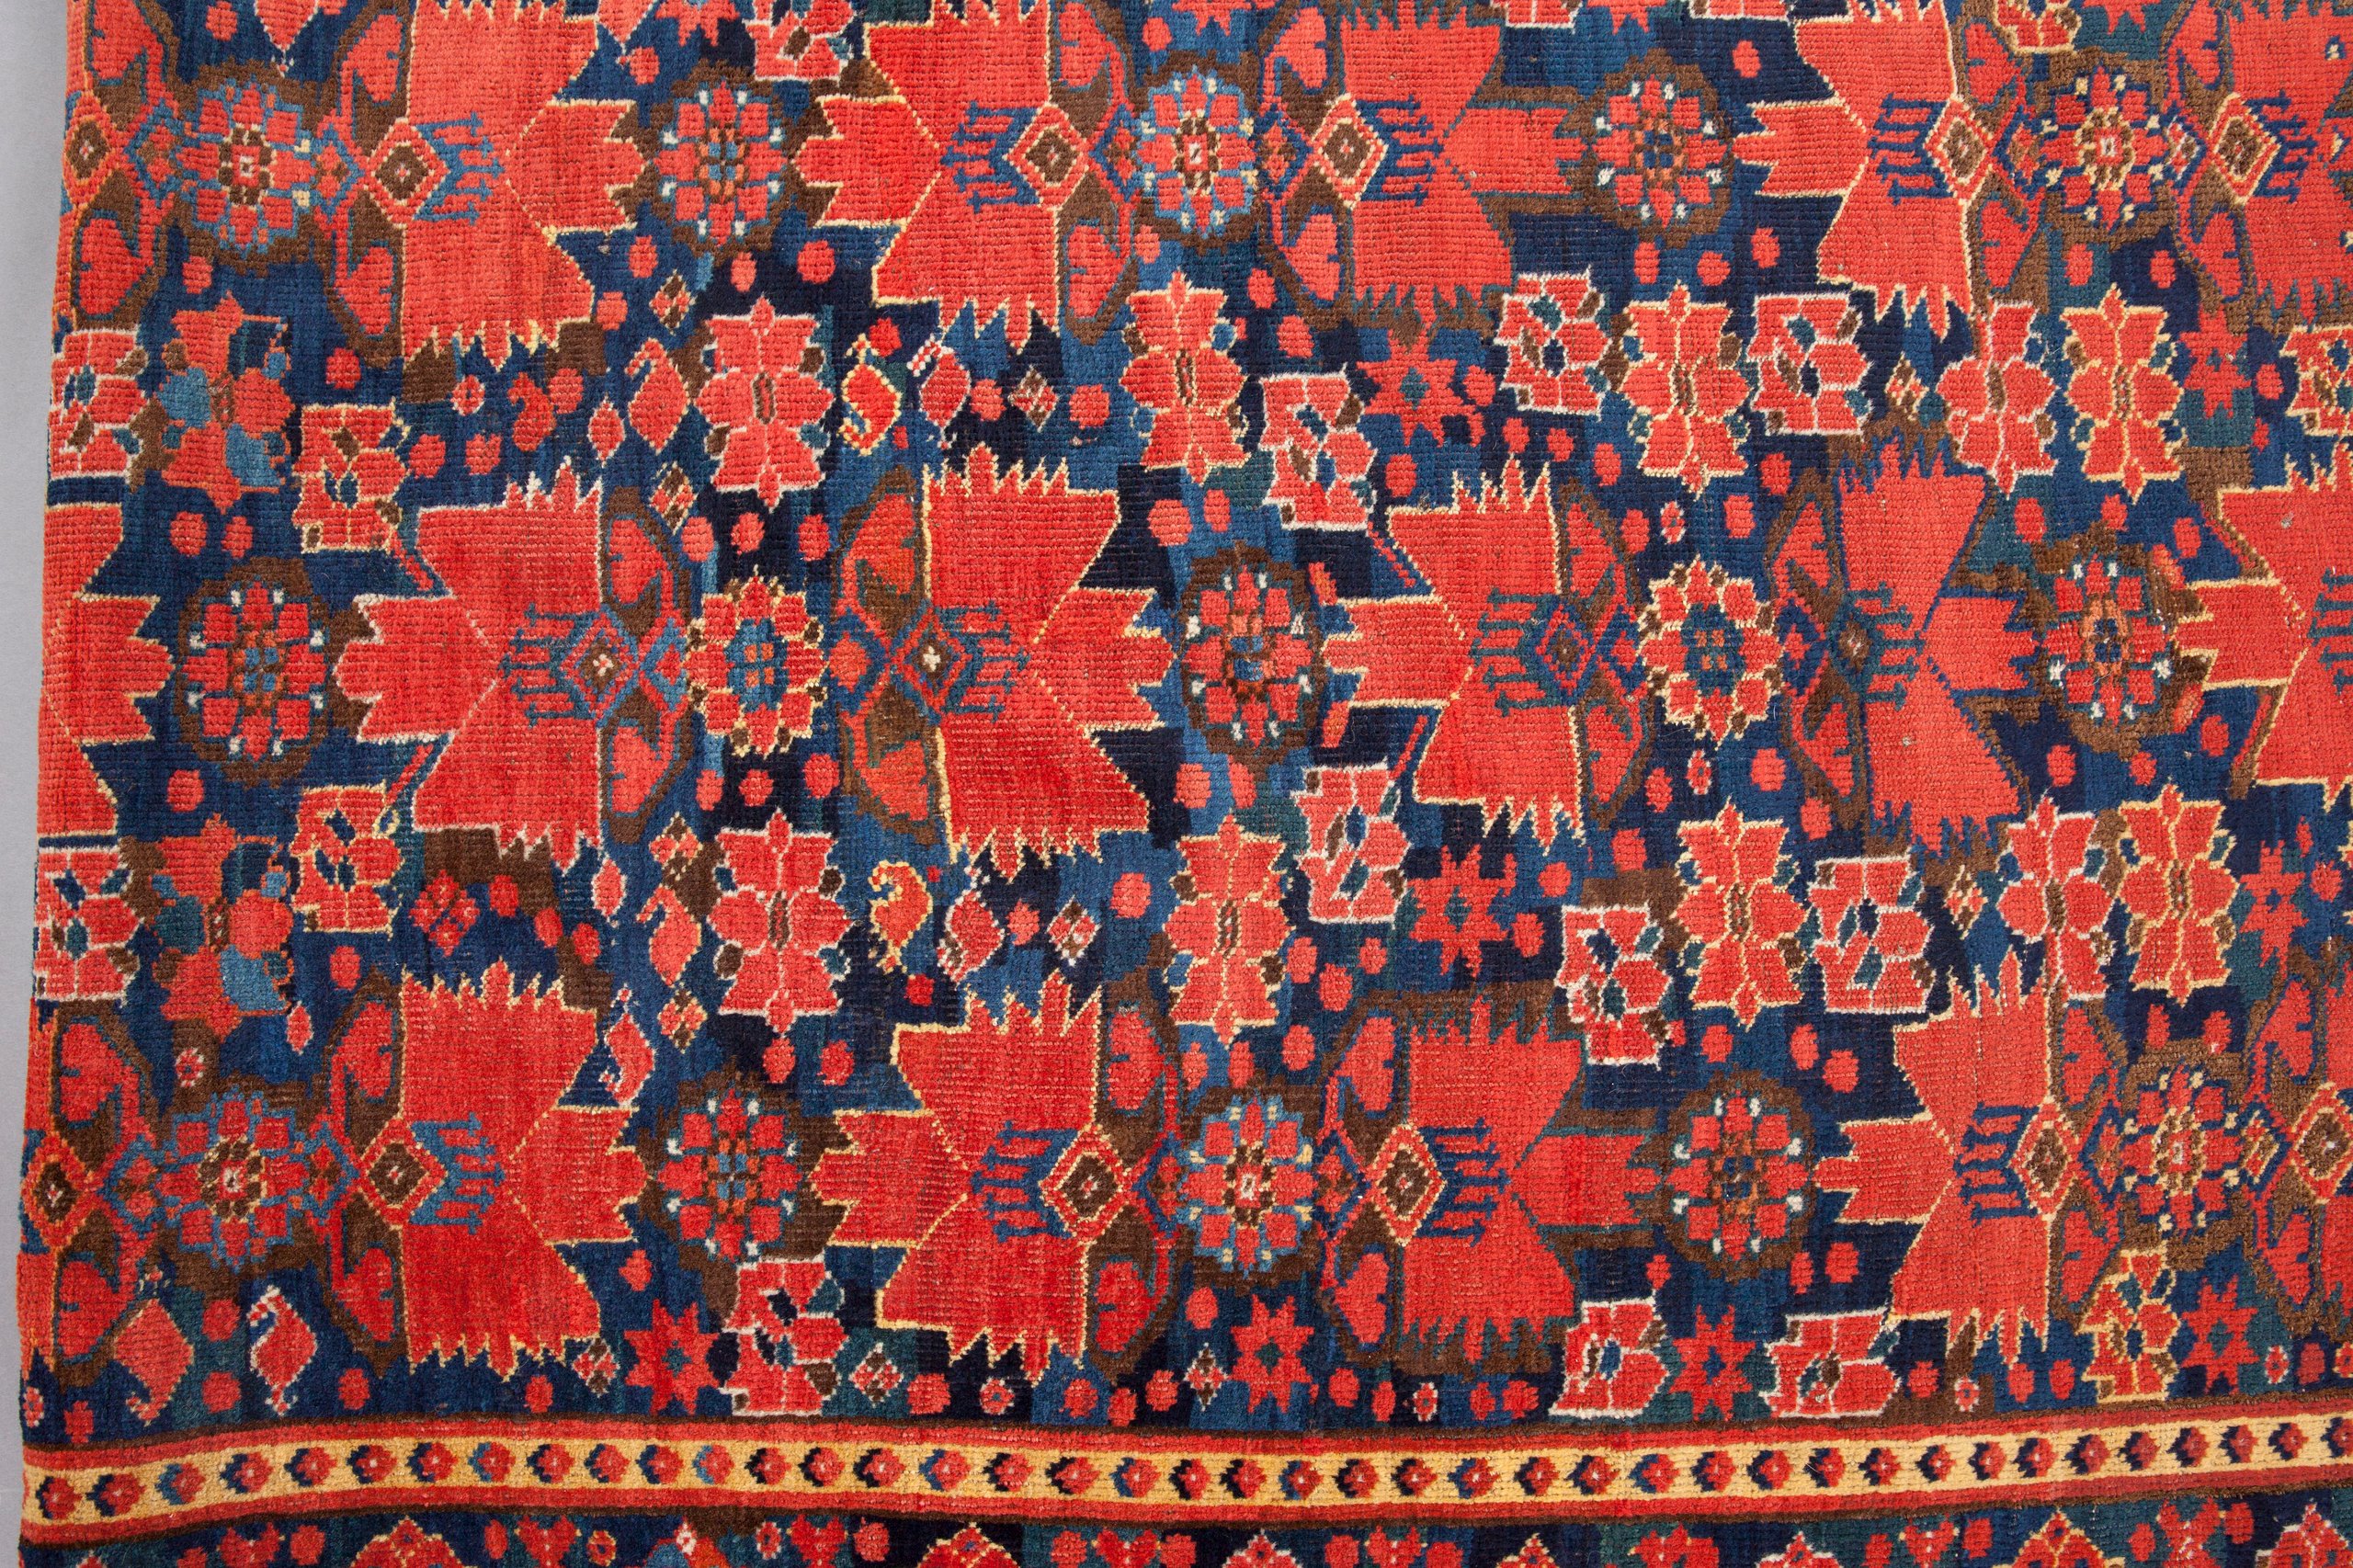 Turkmen Beshir carpet from Central Asia